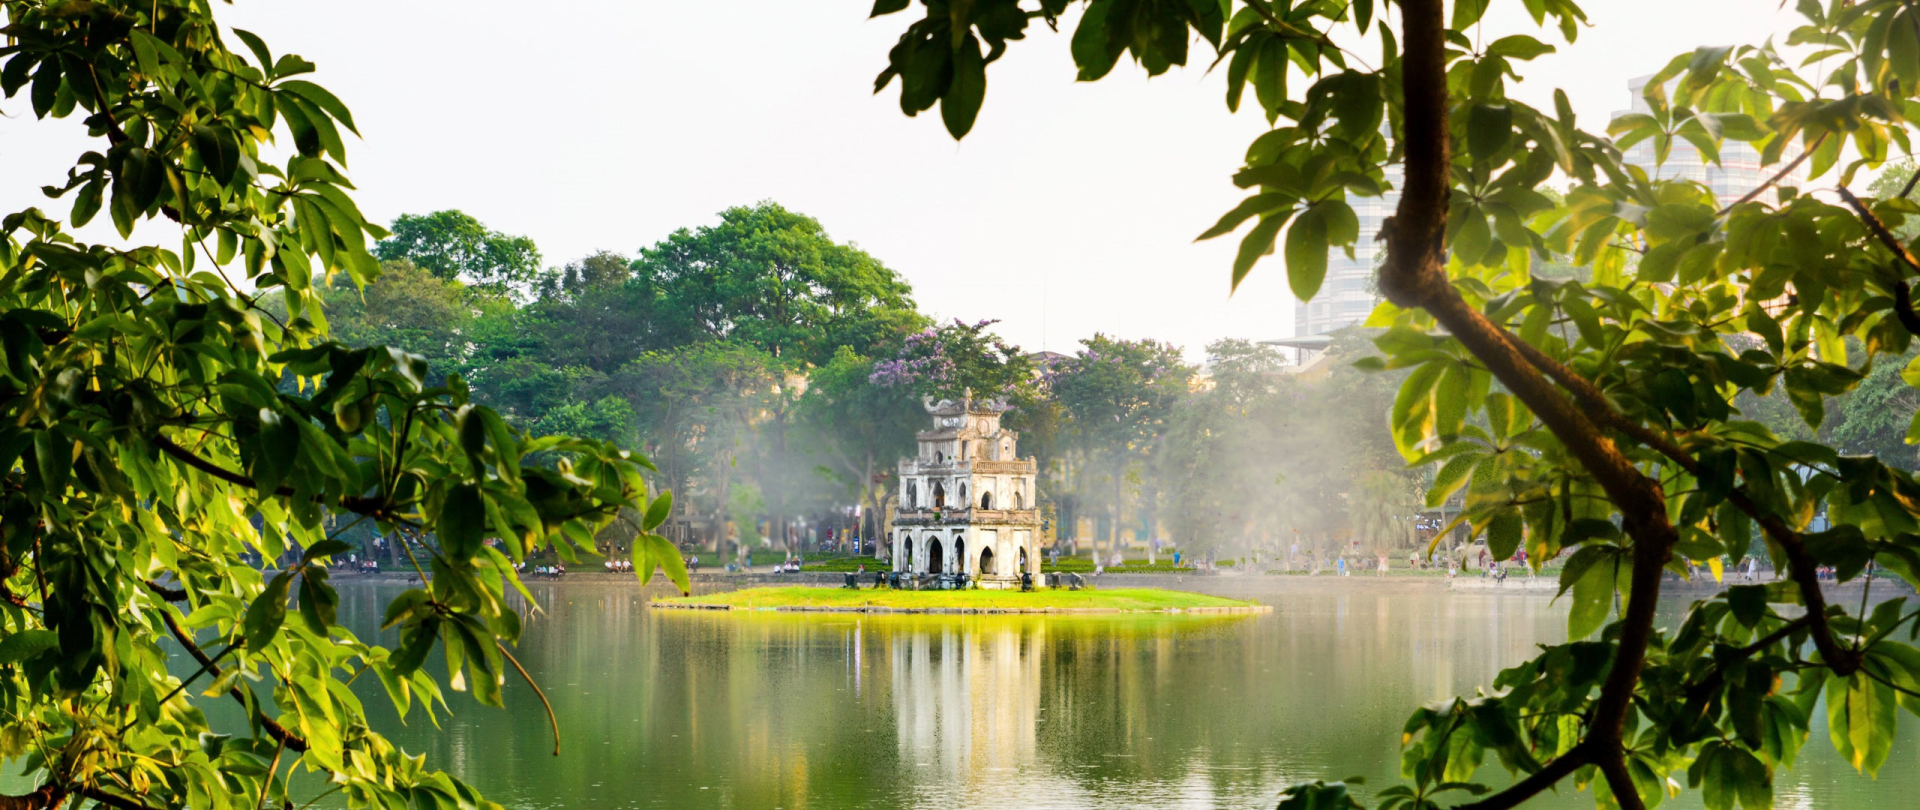 Đà Nẵng, Hạ Long, TP.HCM, Phú Quốc và Hà Nội là 5 địa điểm hút khách du lịch quốc tế nhất Việt Nam